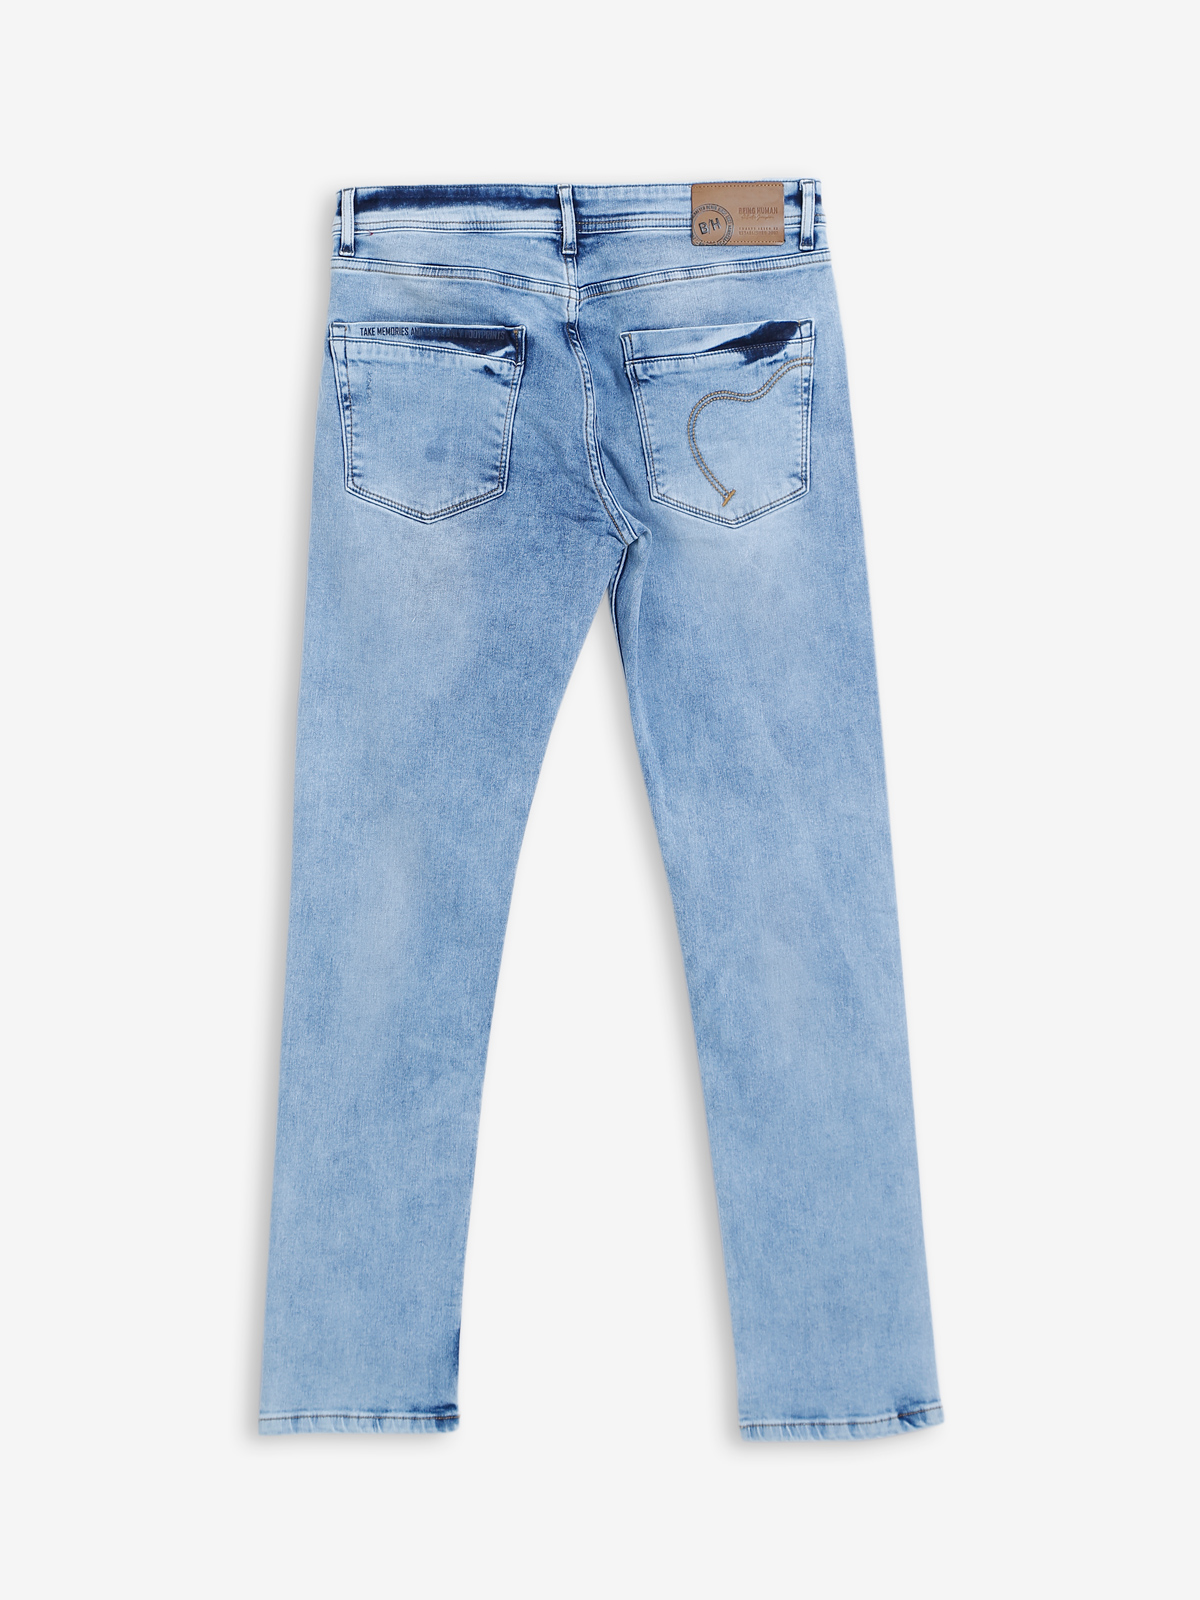 Men's Slim Fit || Stretchable Jeans For Men's || Denim Jeans || Casual jeans  || Men's